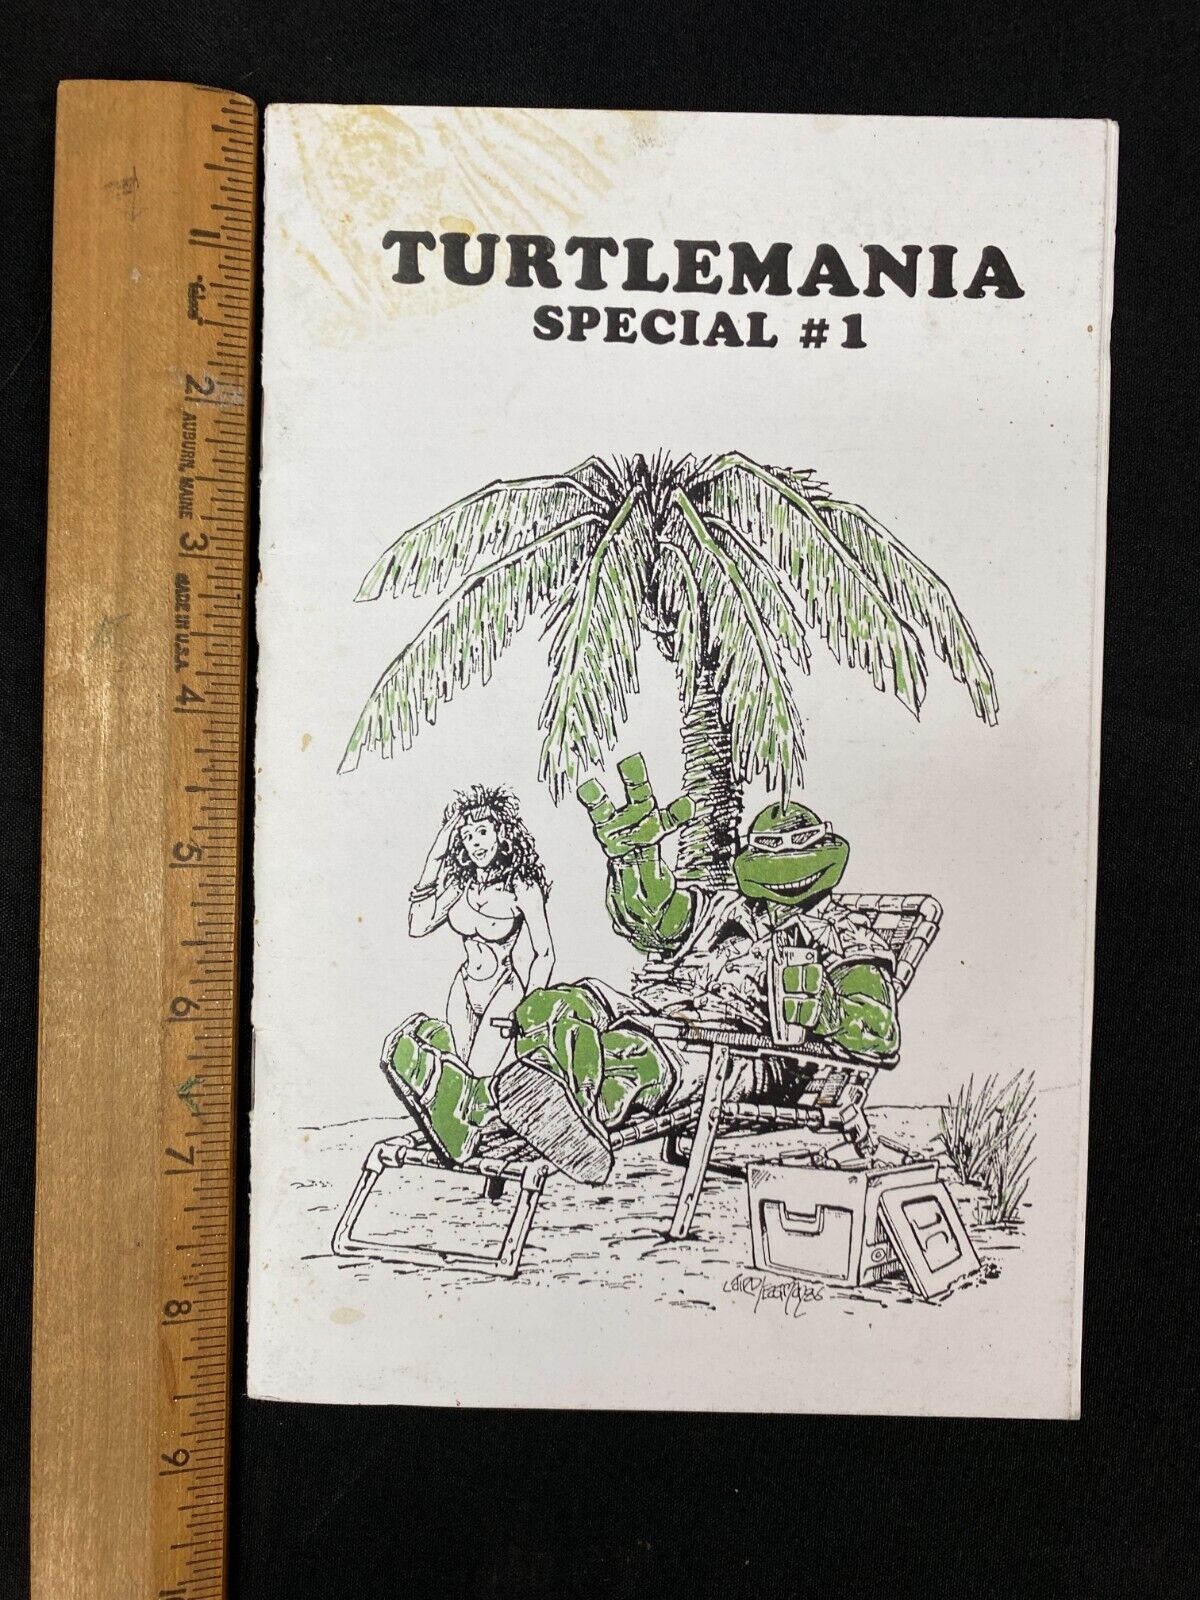 1986 Teenage Mutant Ninja Turtles Turtlemania Special #1 Anniversary Book 53024